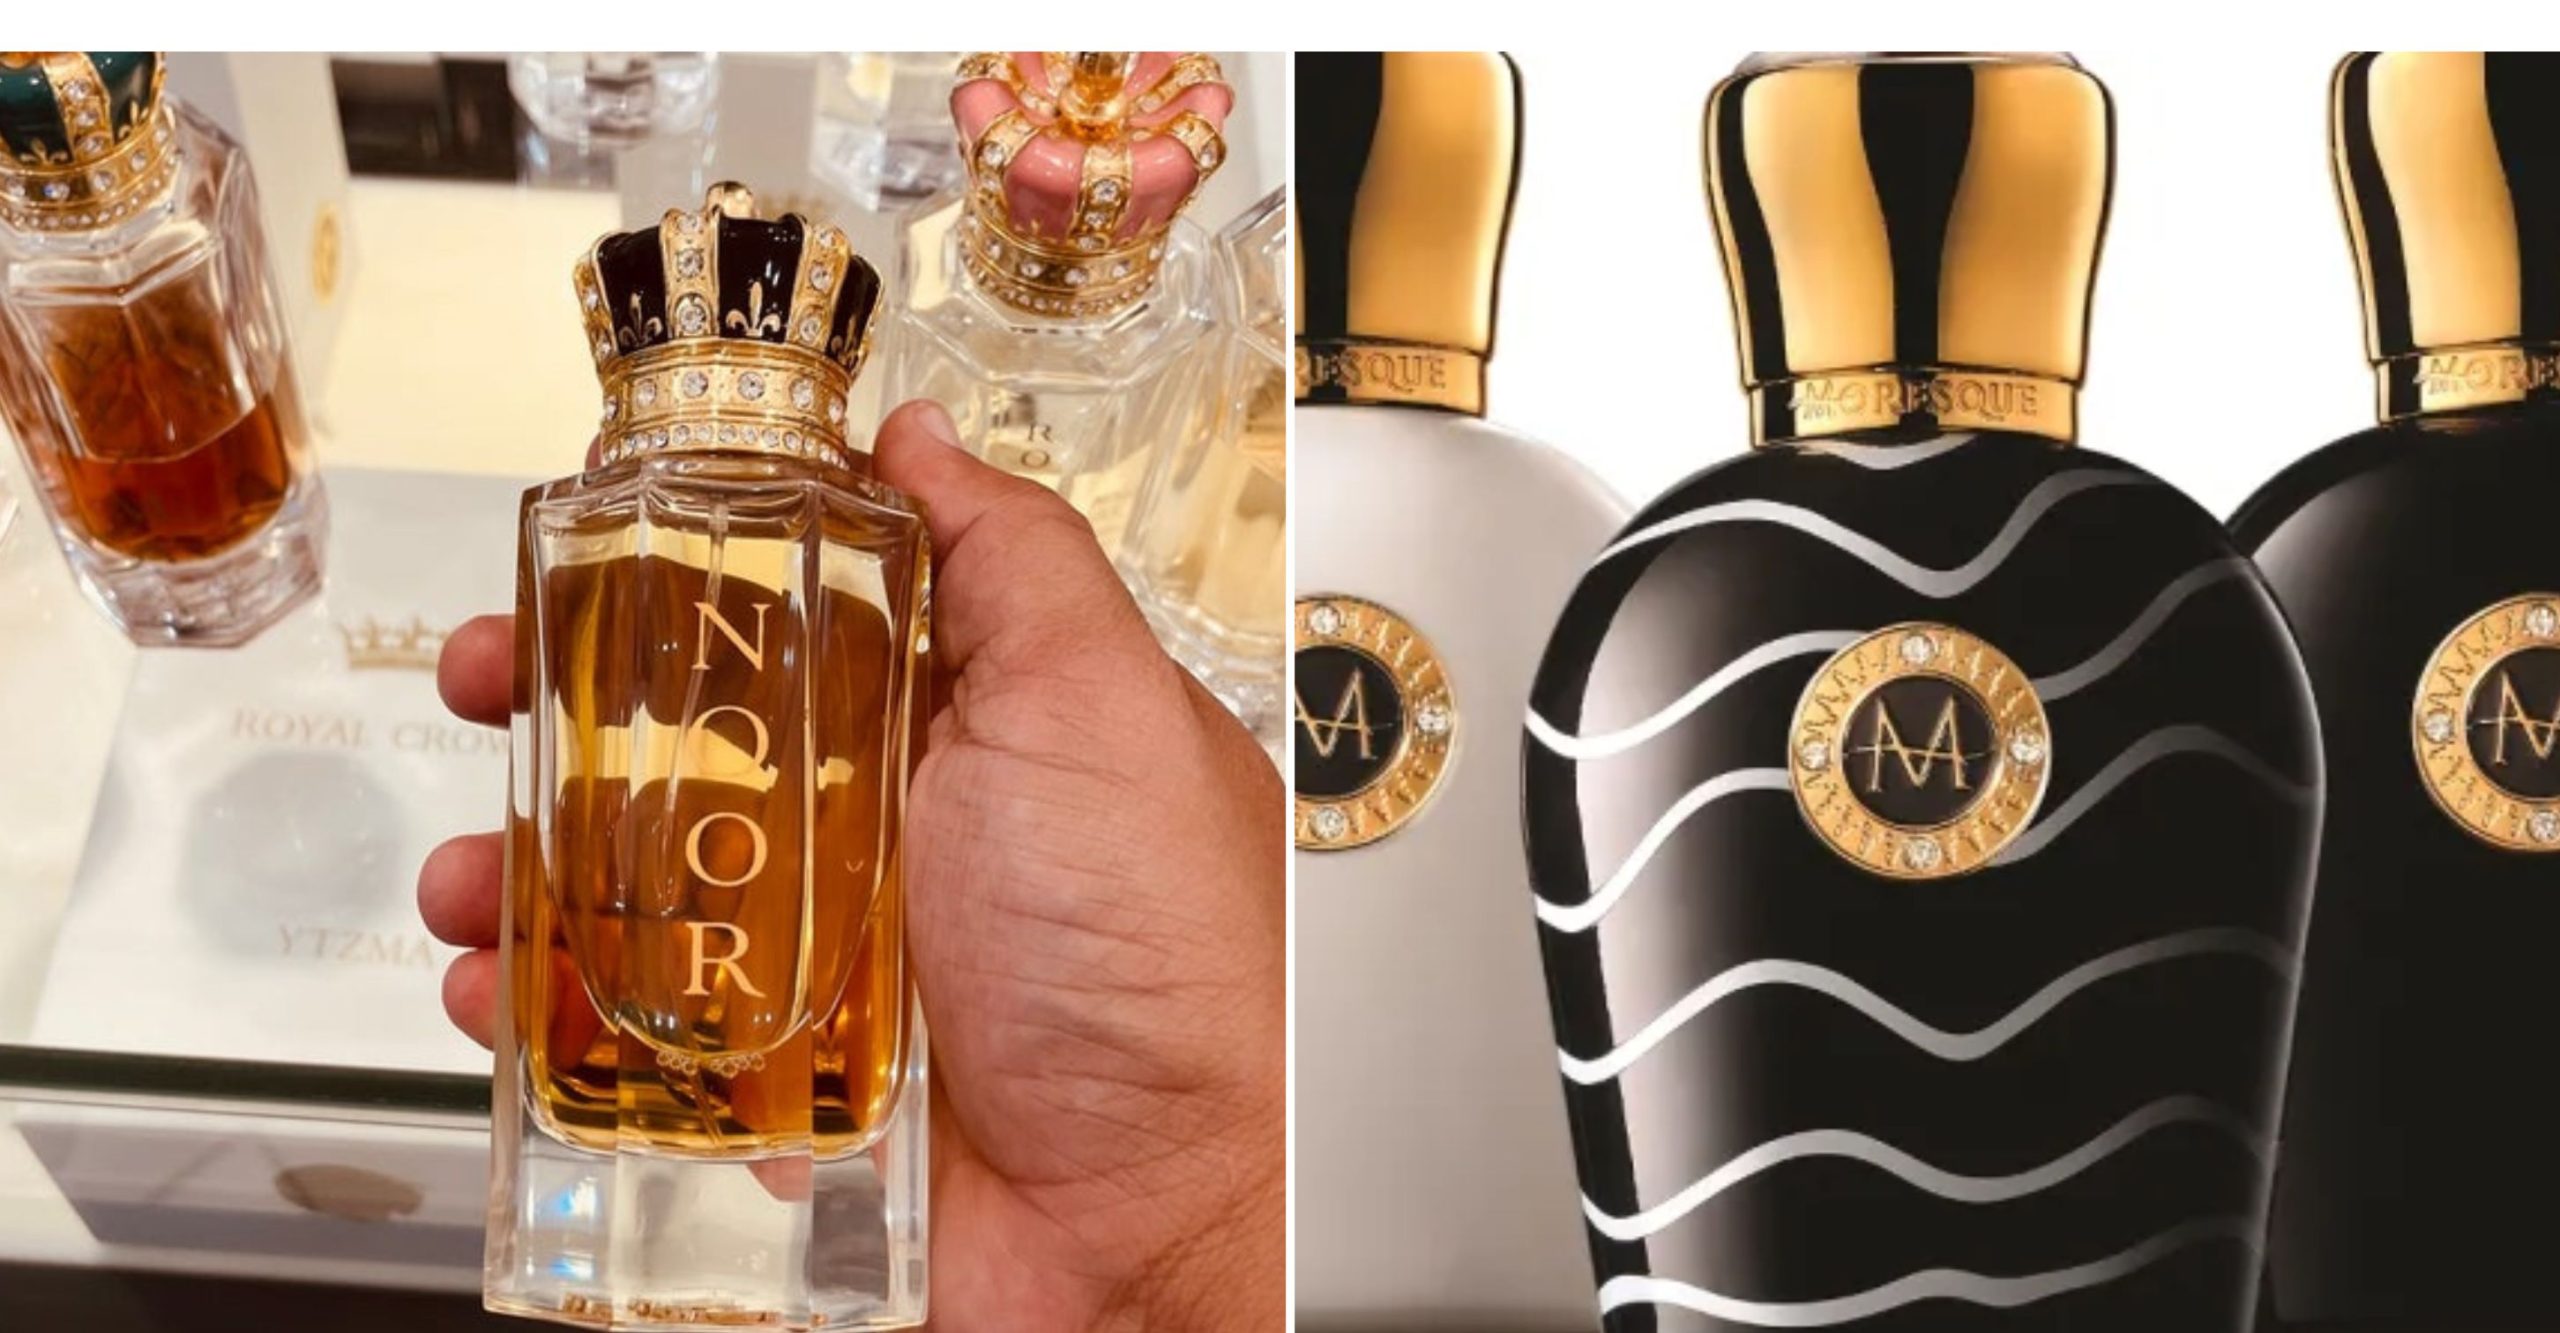 Best Tom Ford Perfumes – Perfume Dubai